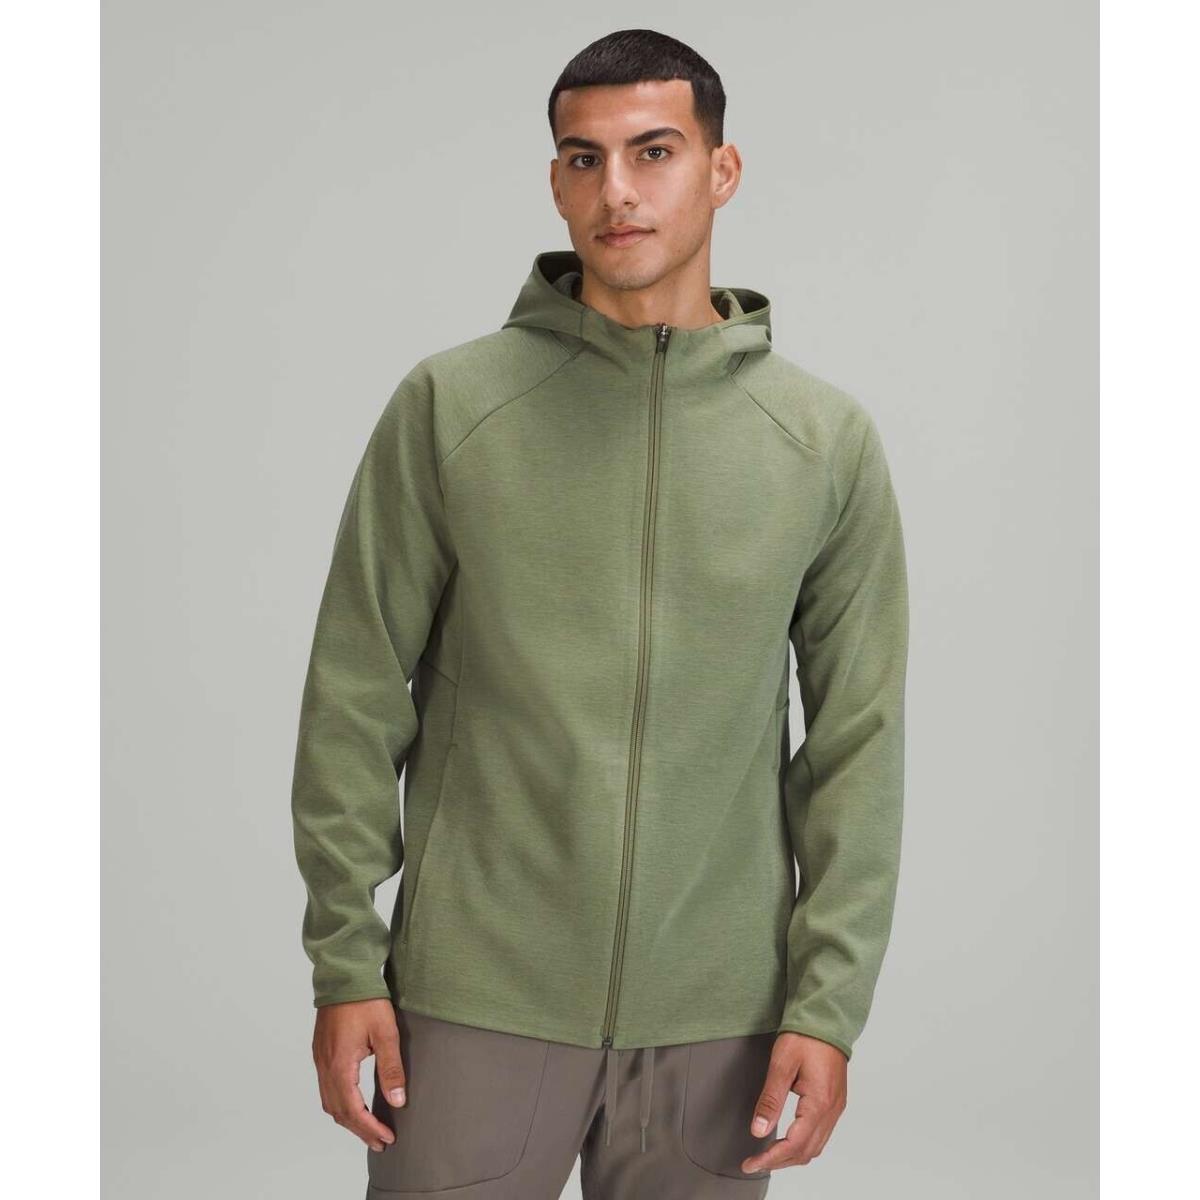 Lululemon Men`s Gridliner Fleece Zip Hoodie Size M Heathered Green Twill